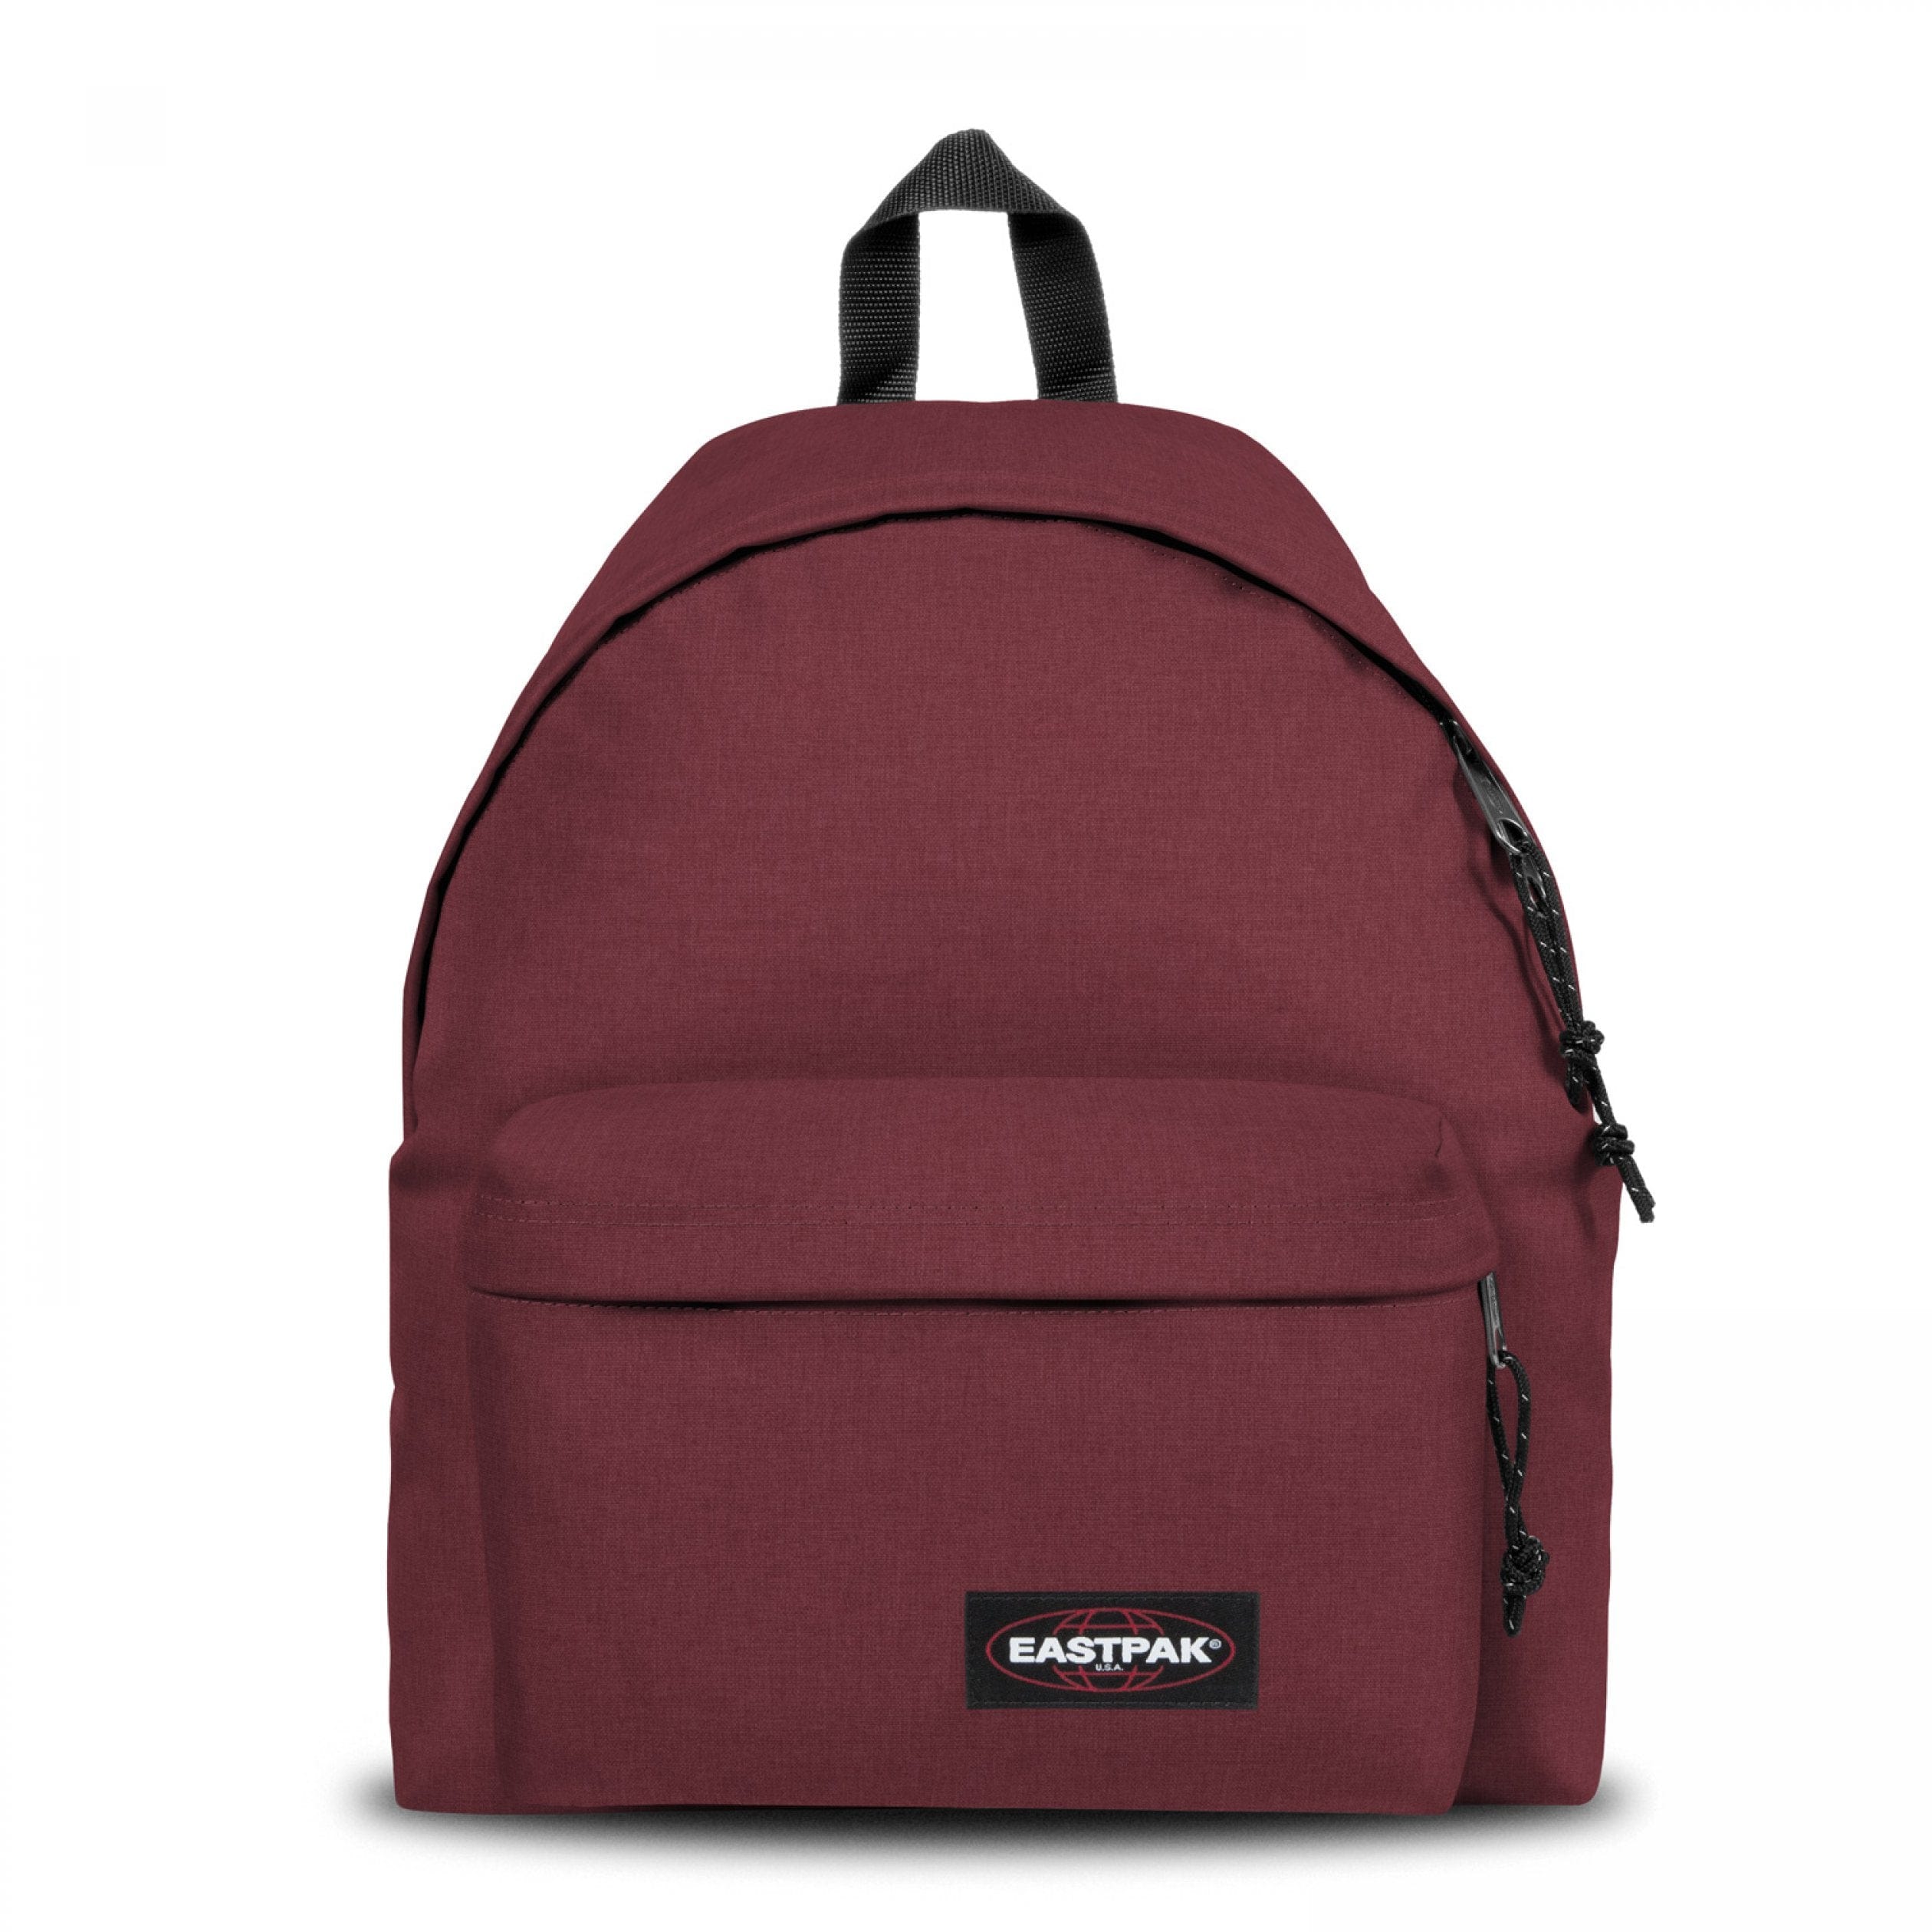  Eastpak Backpack